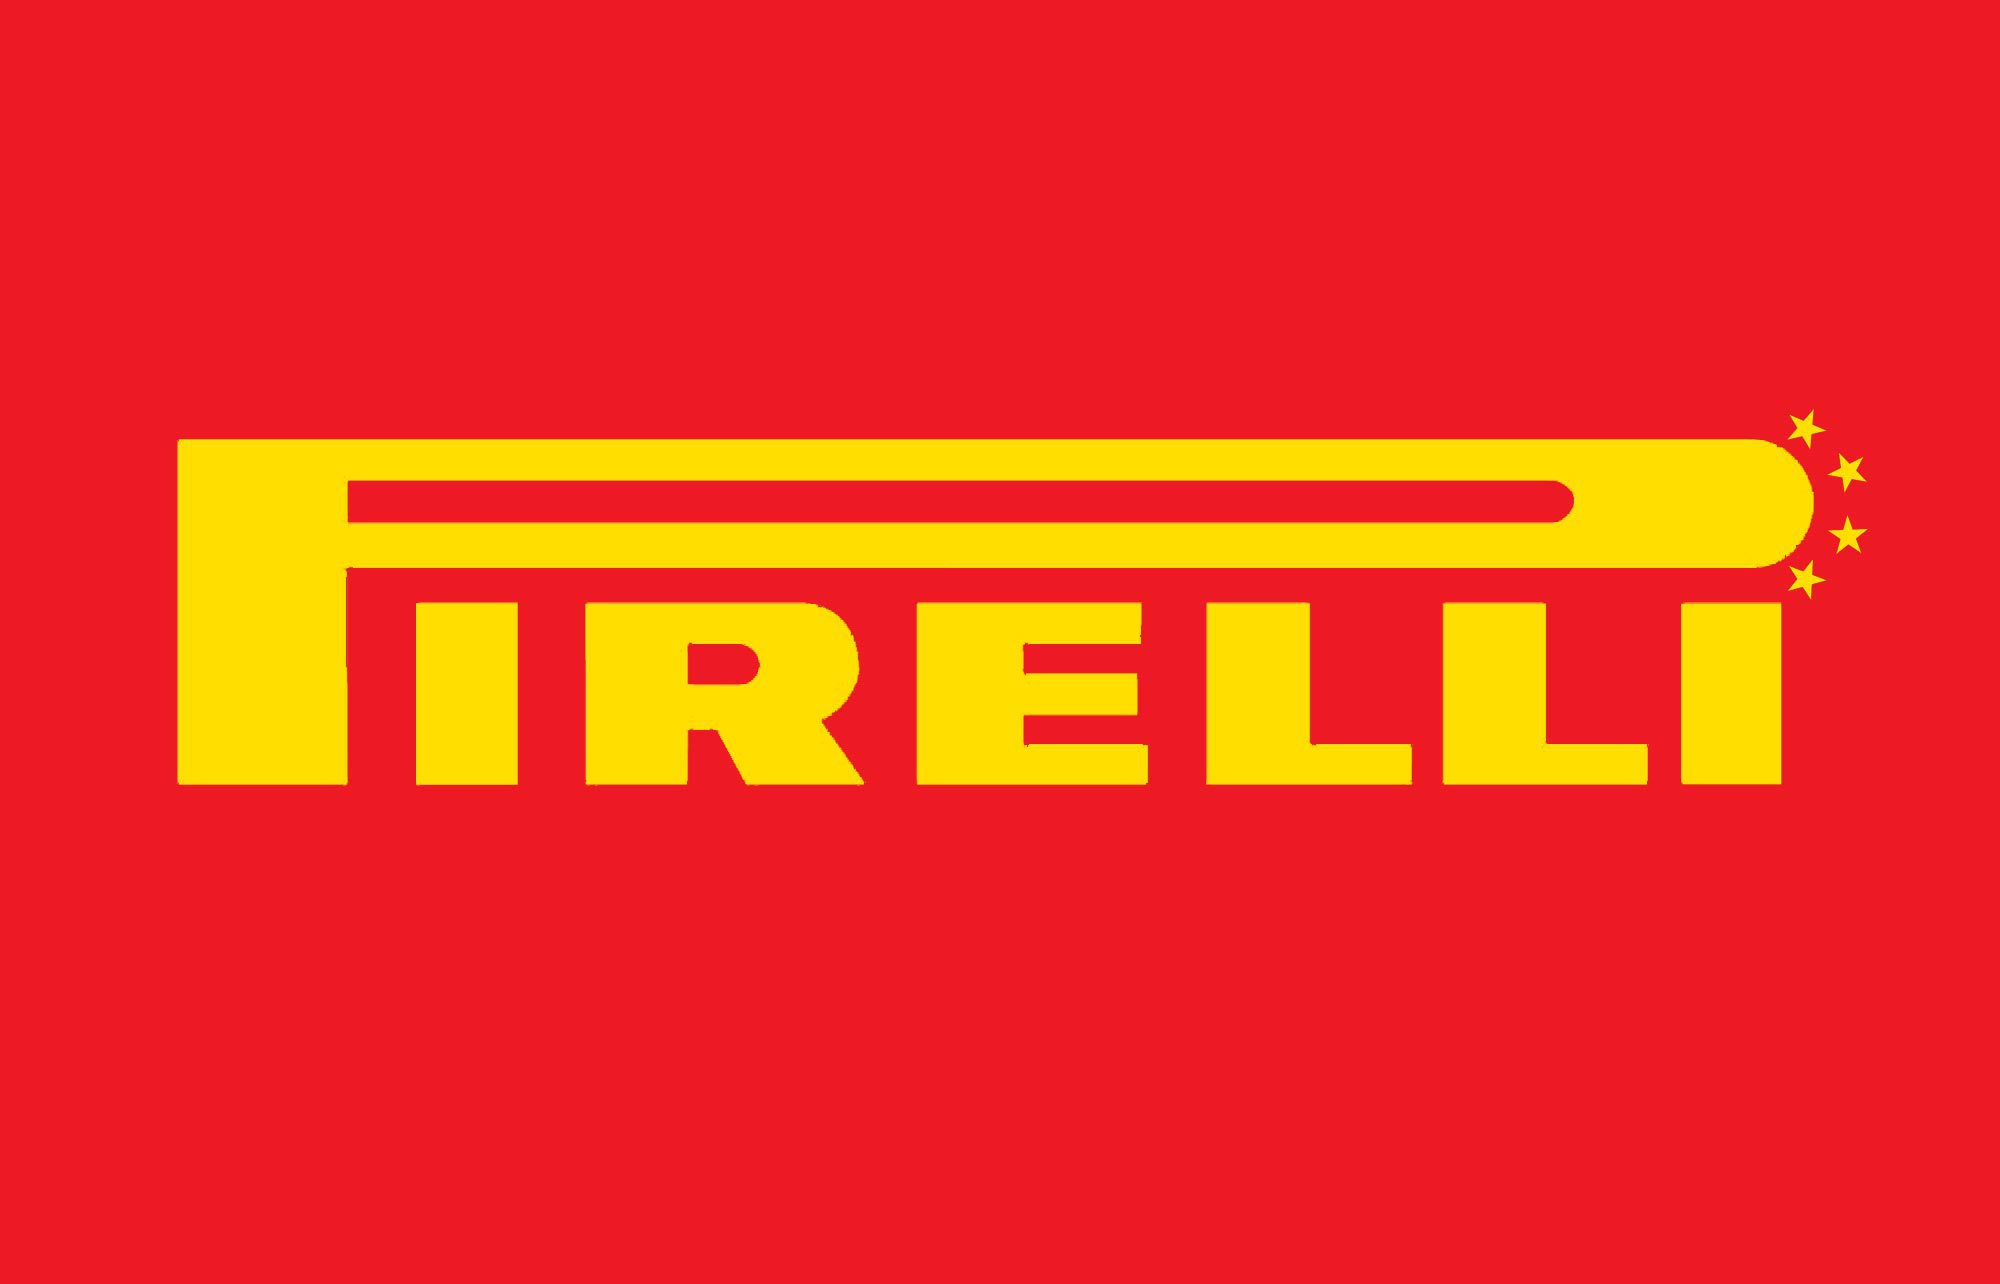 Pirelli Logos